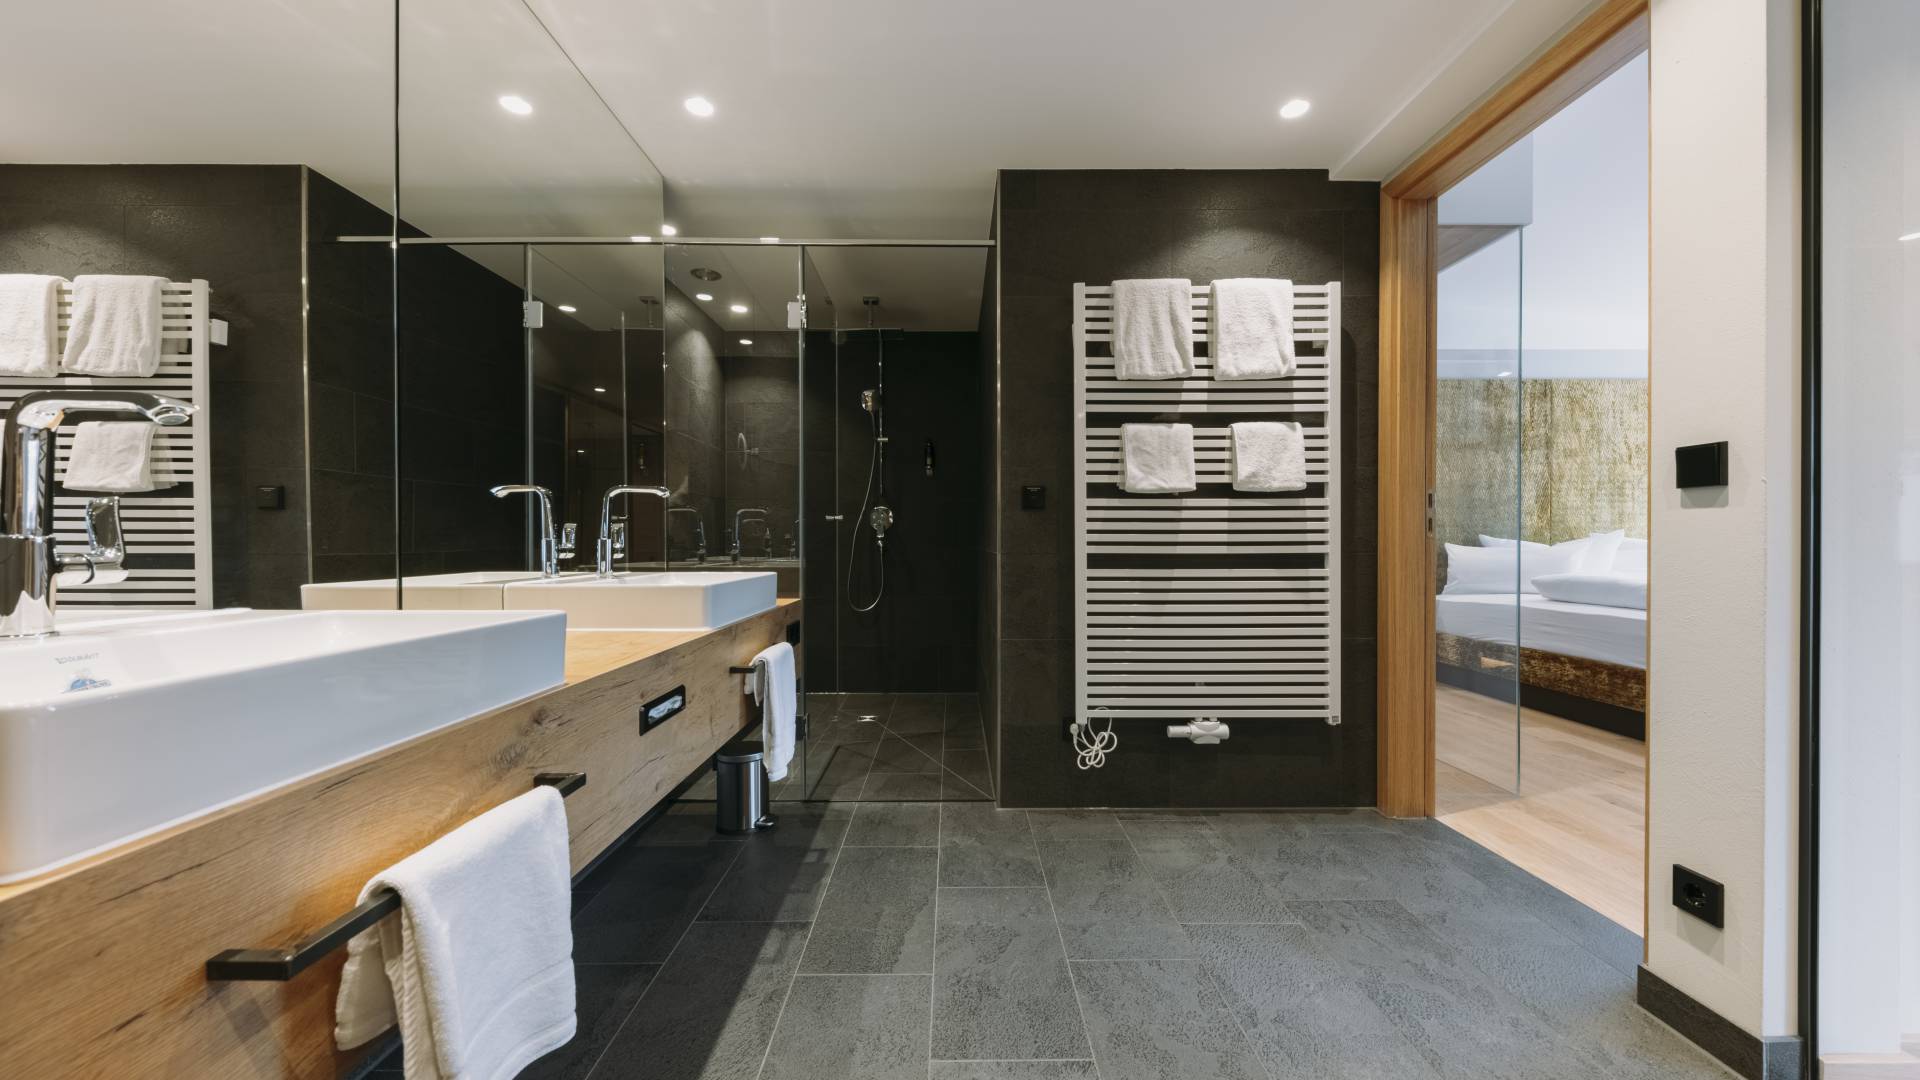 Stilvolles Badezimmer mit Holzelementen als Urlaubsangebot im Allgäu.